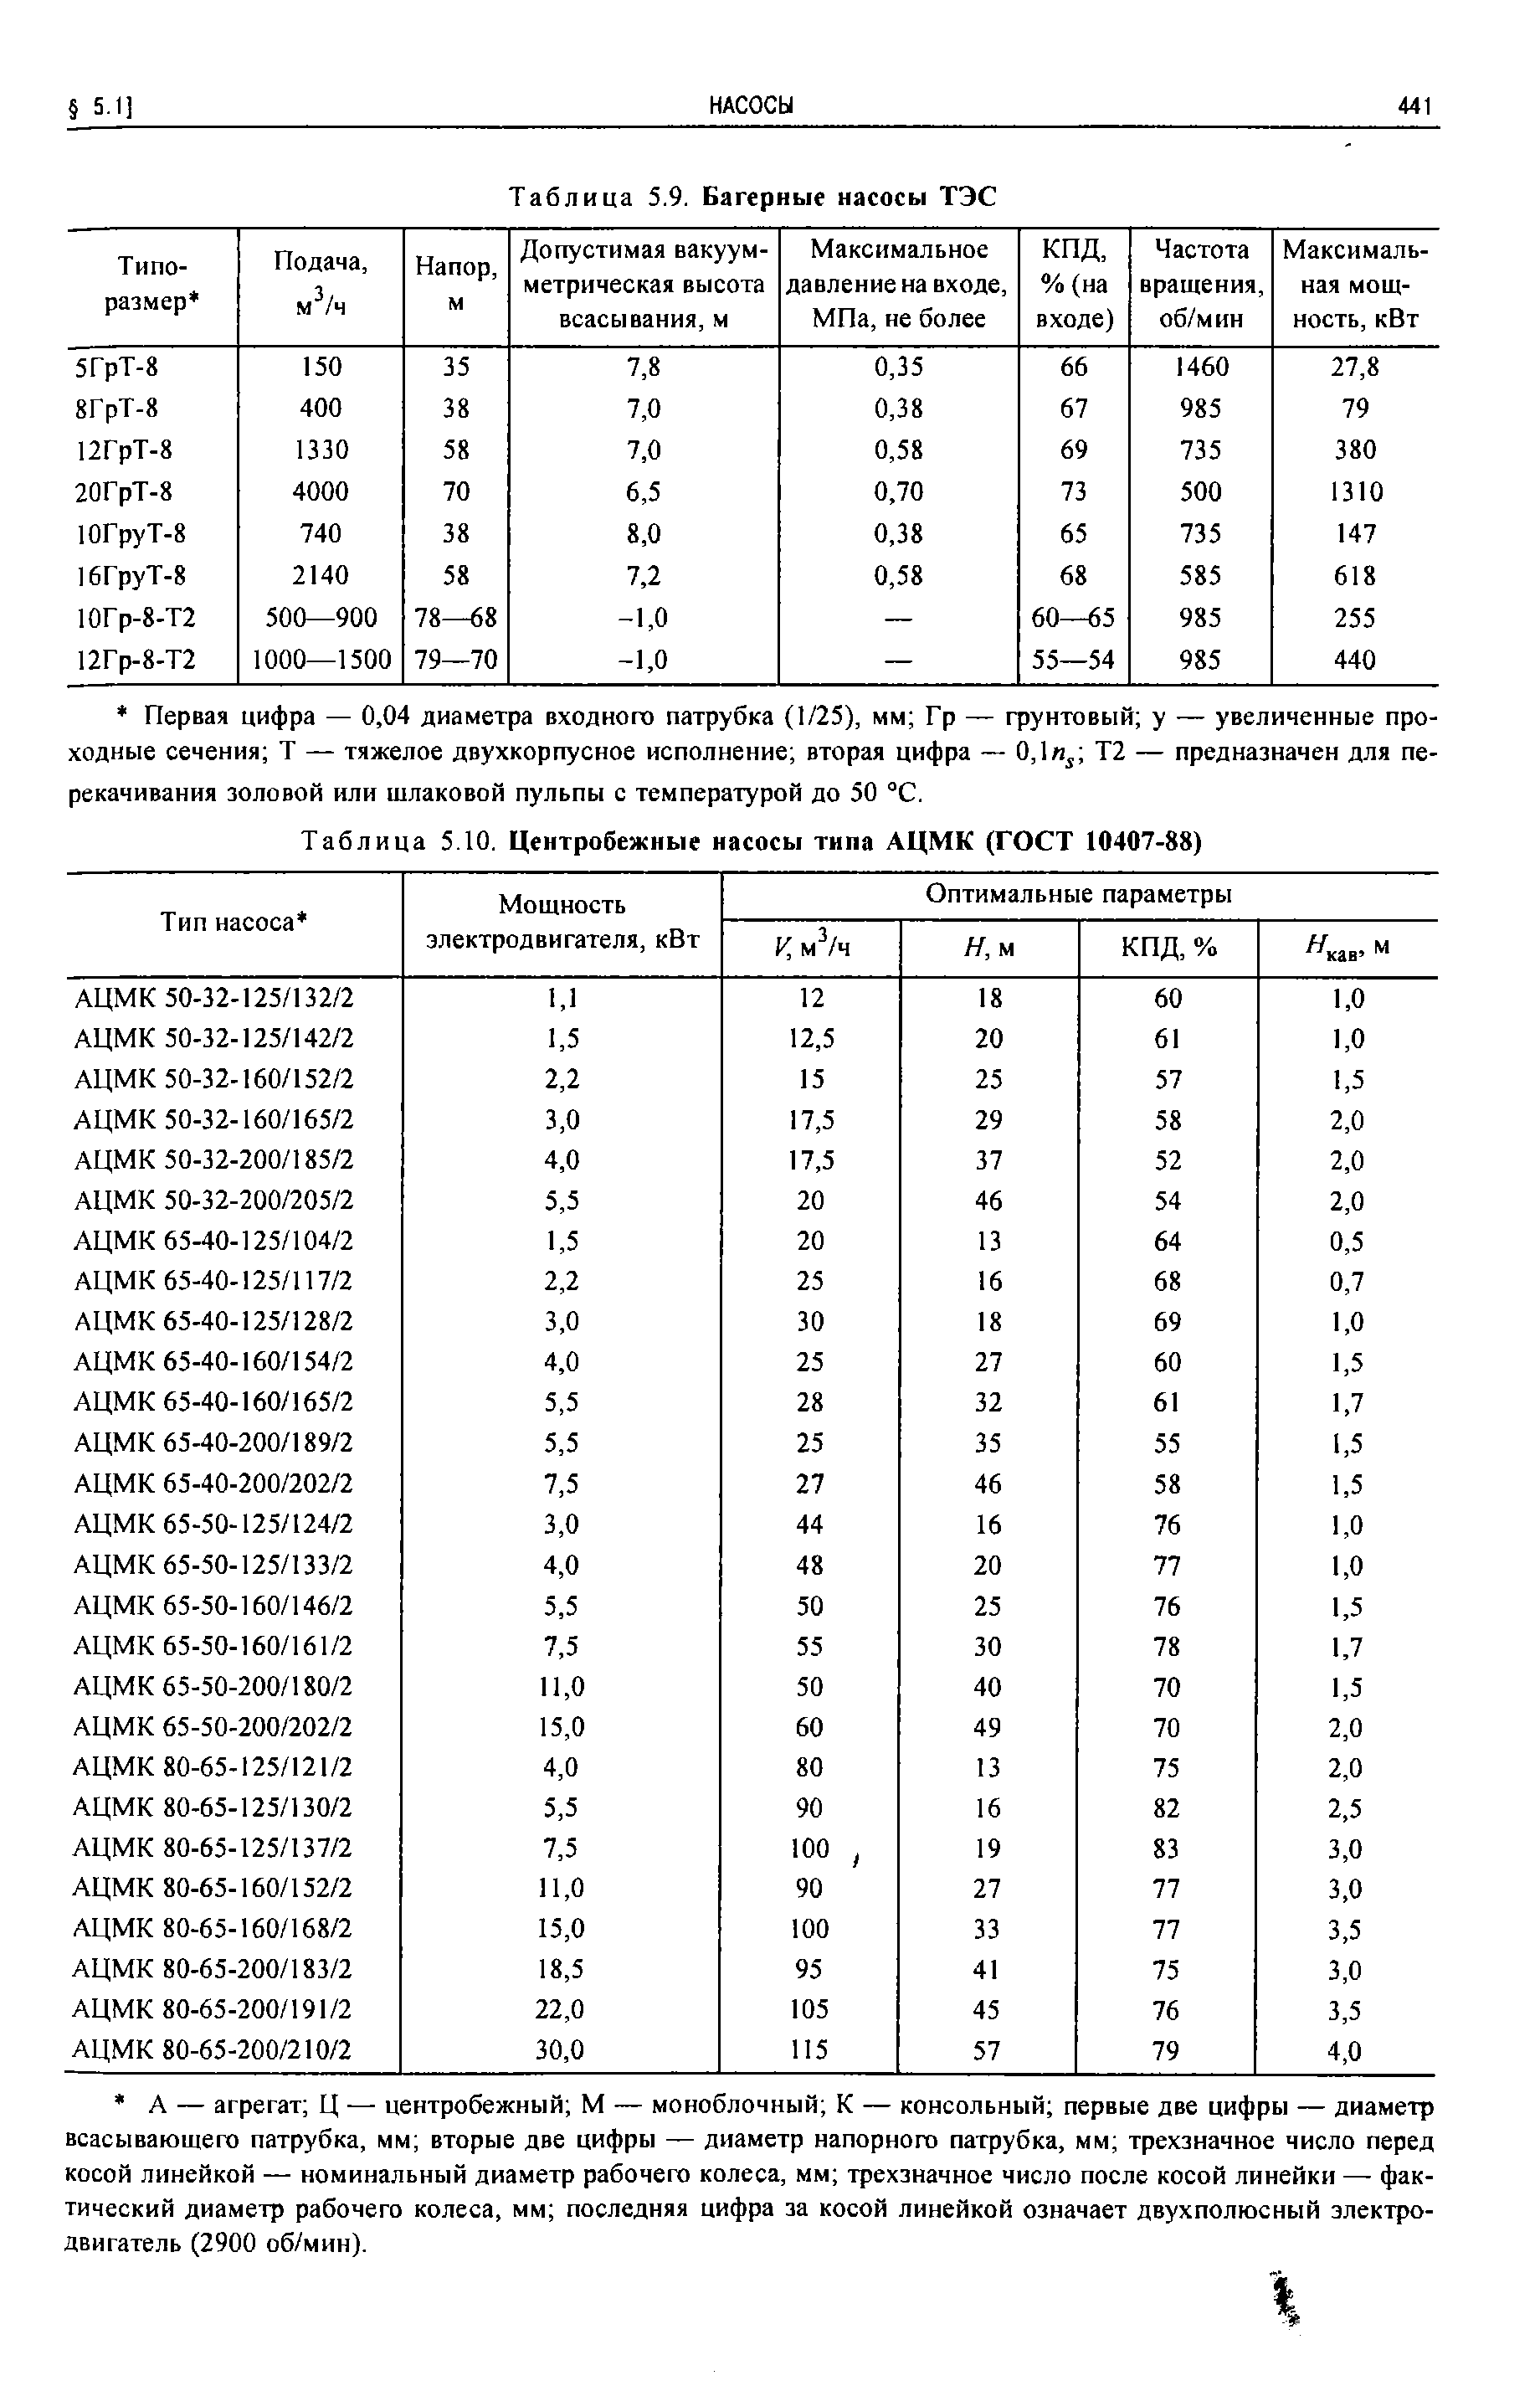 Таблица 5.10. Центробежные насосы типа АЦМК (ГОСТ 10407-88)
